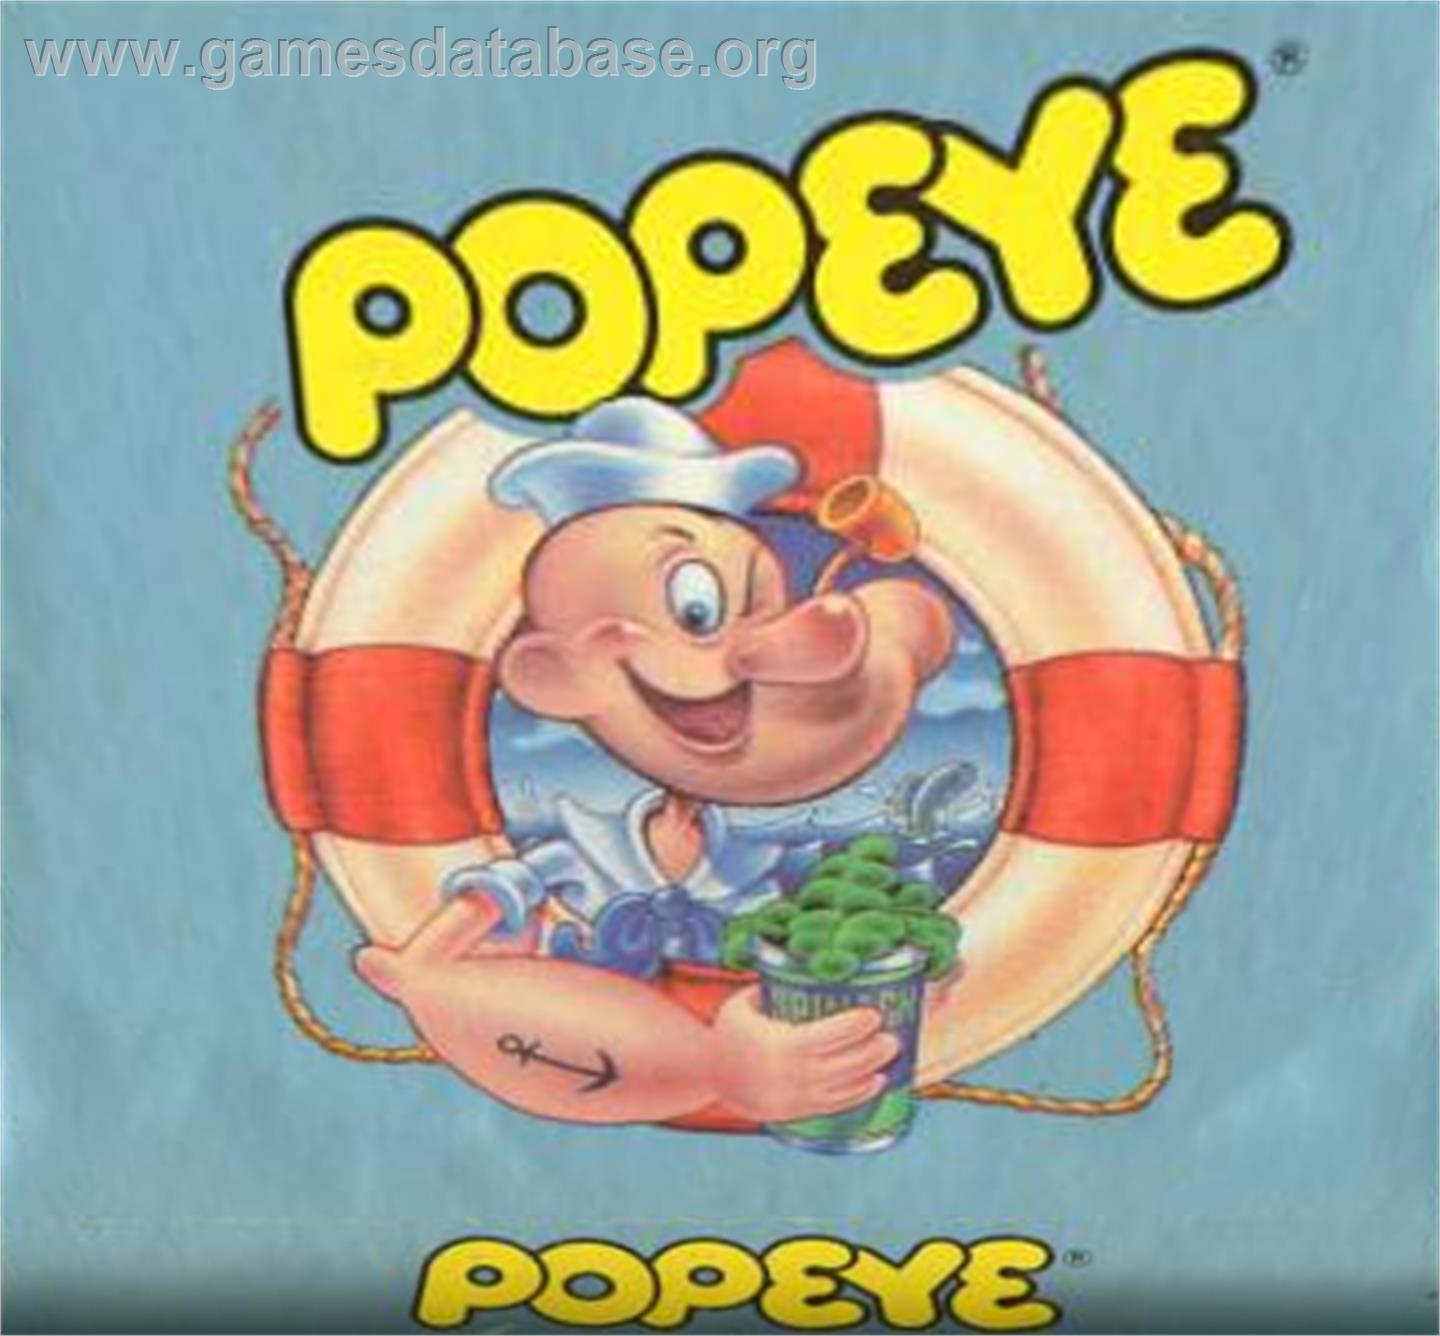 Popeye - Atari 5200 - Artwork - Cartridge Top